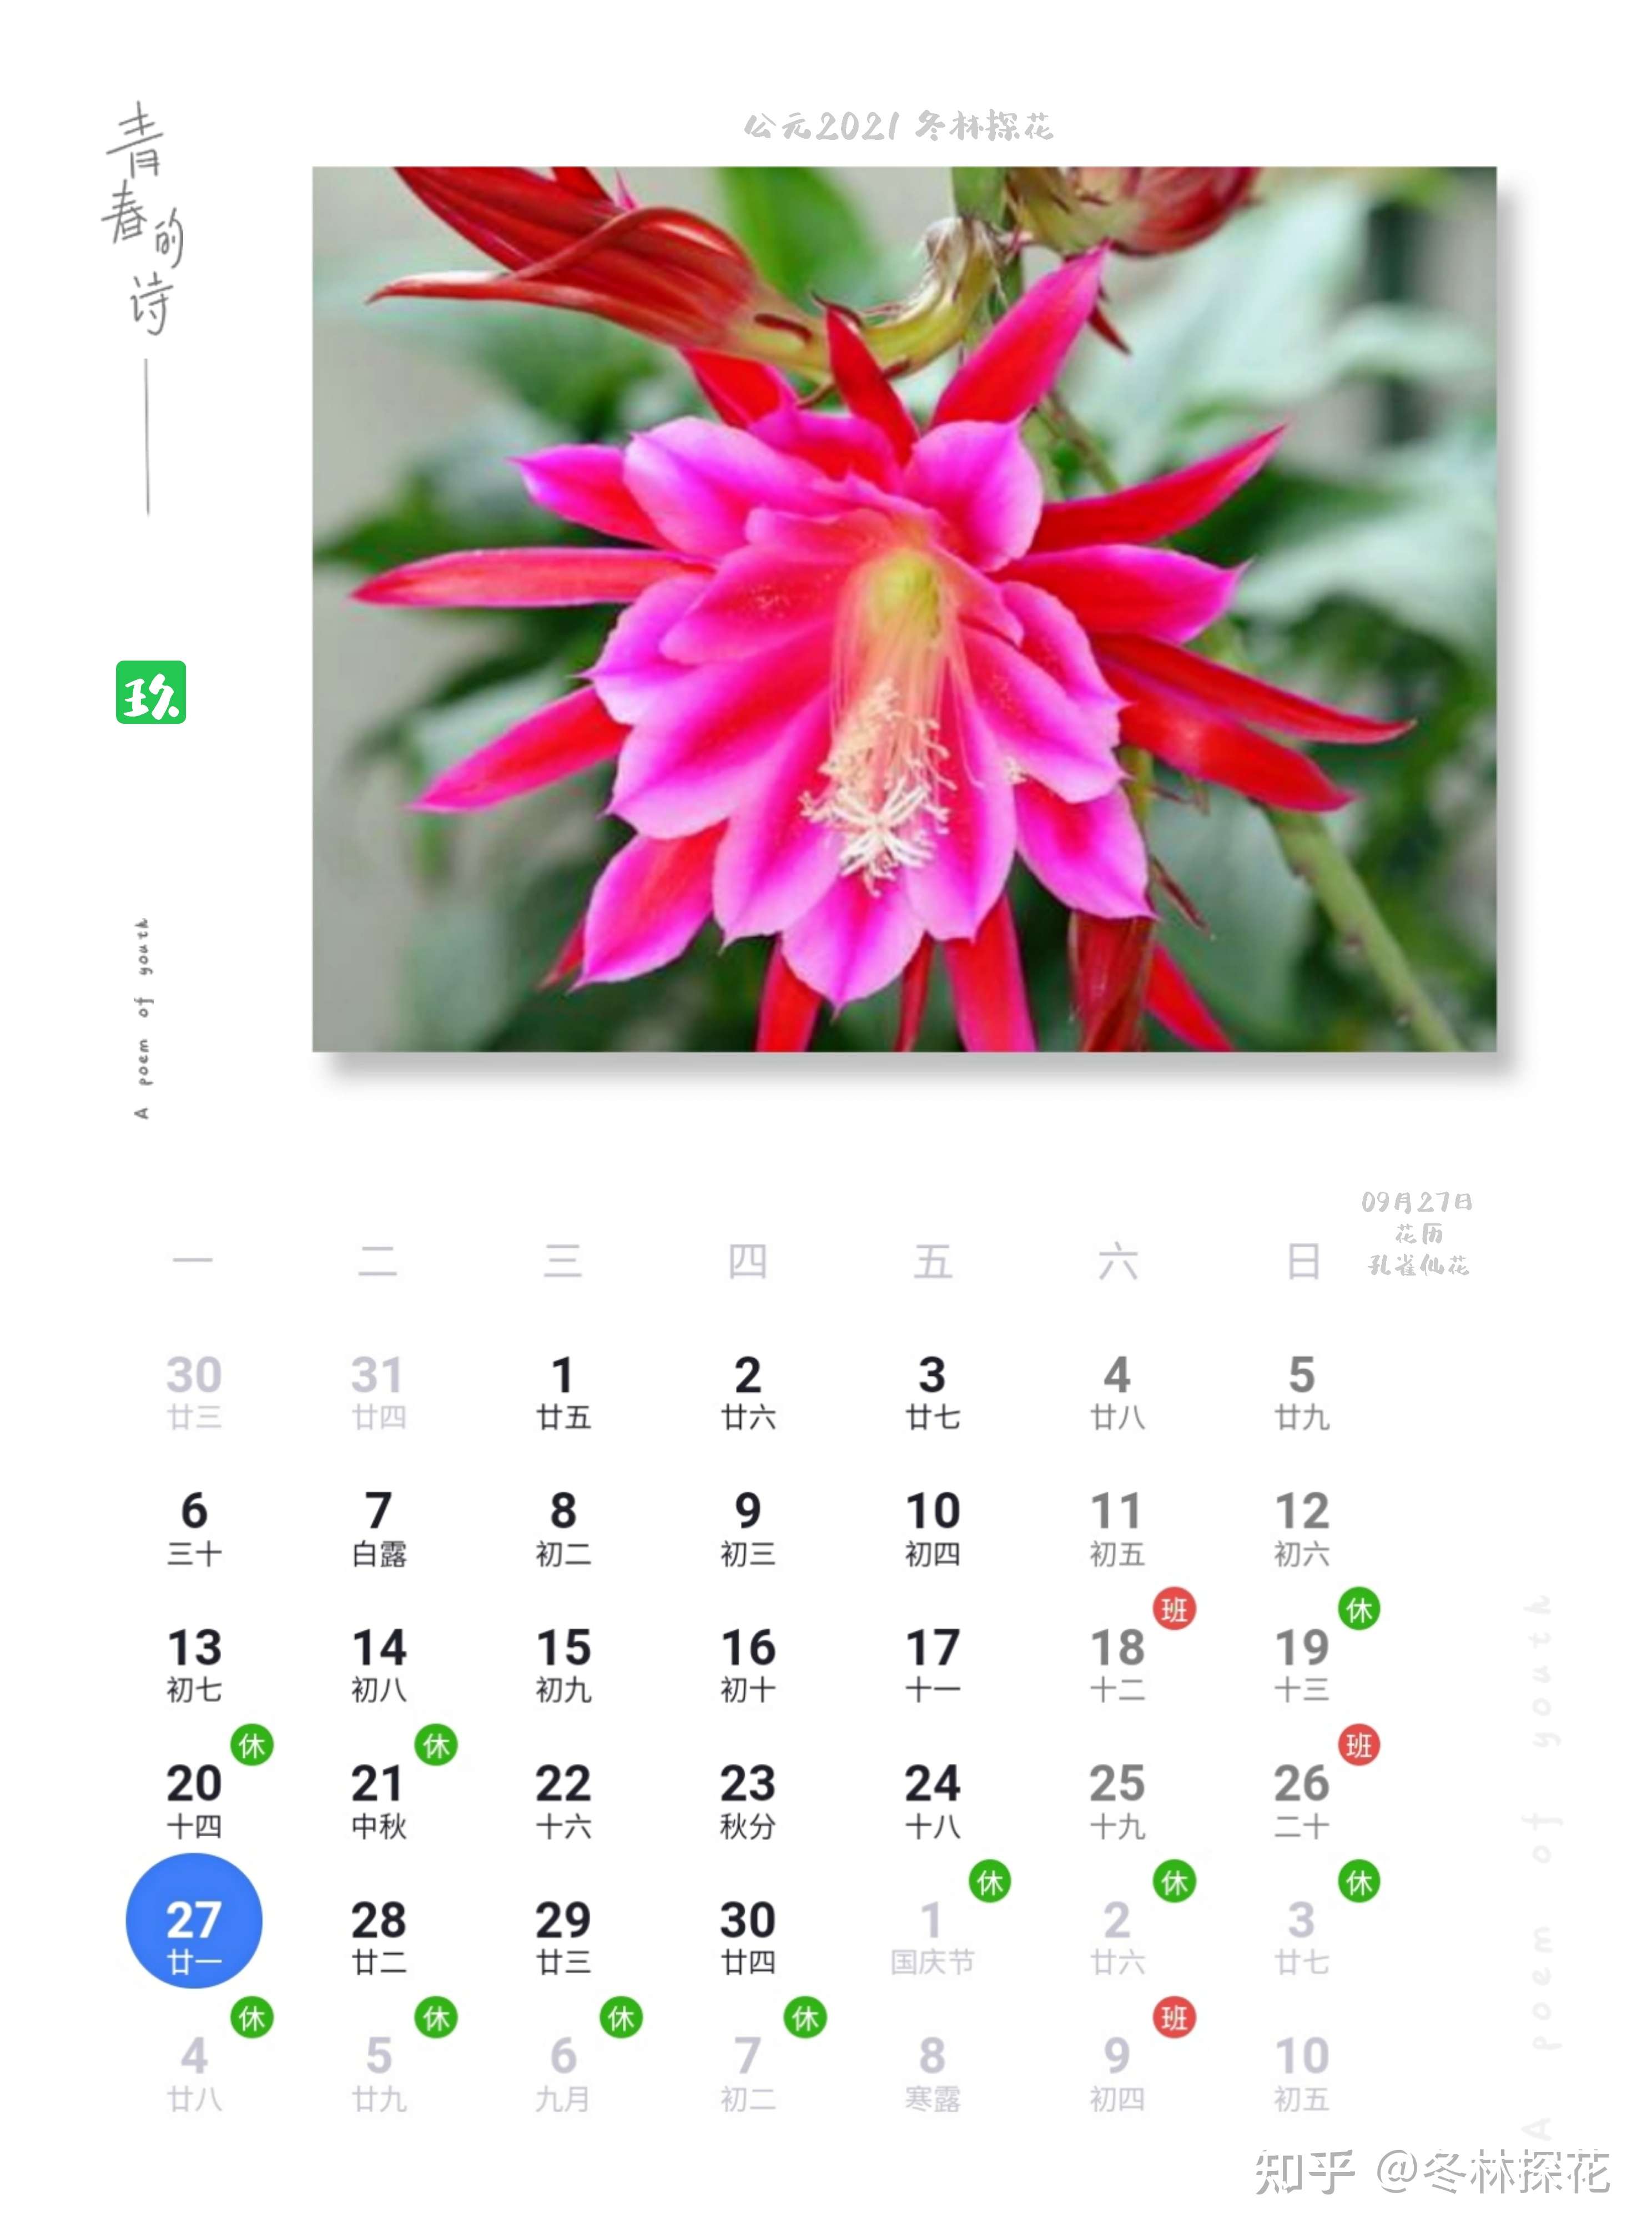 鲜花日历 的想法: 9月27日花历,孔雀仙花 